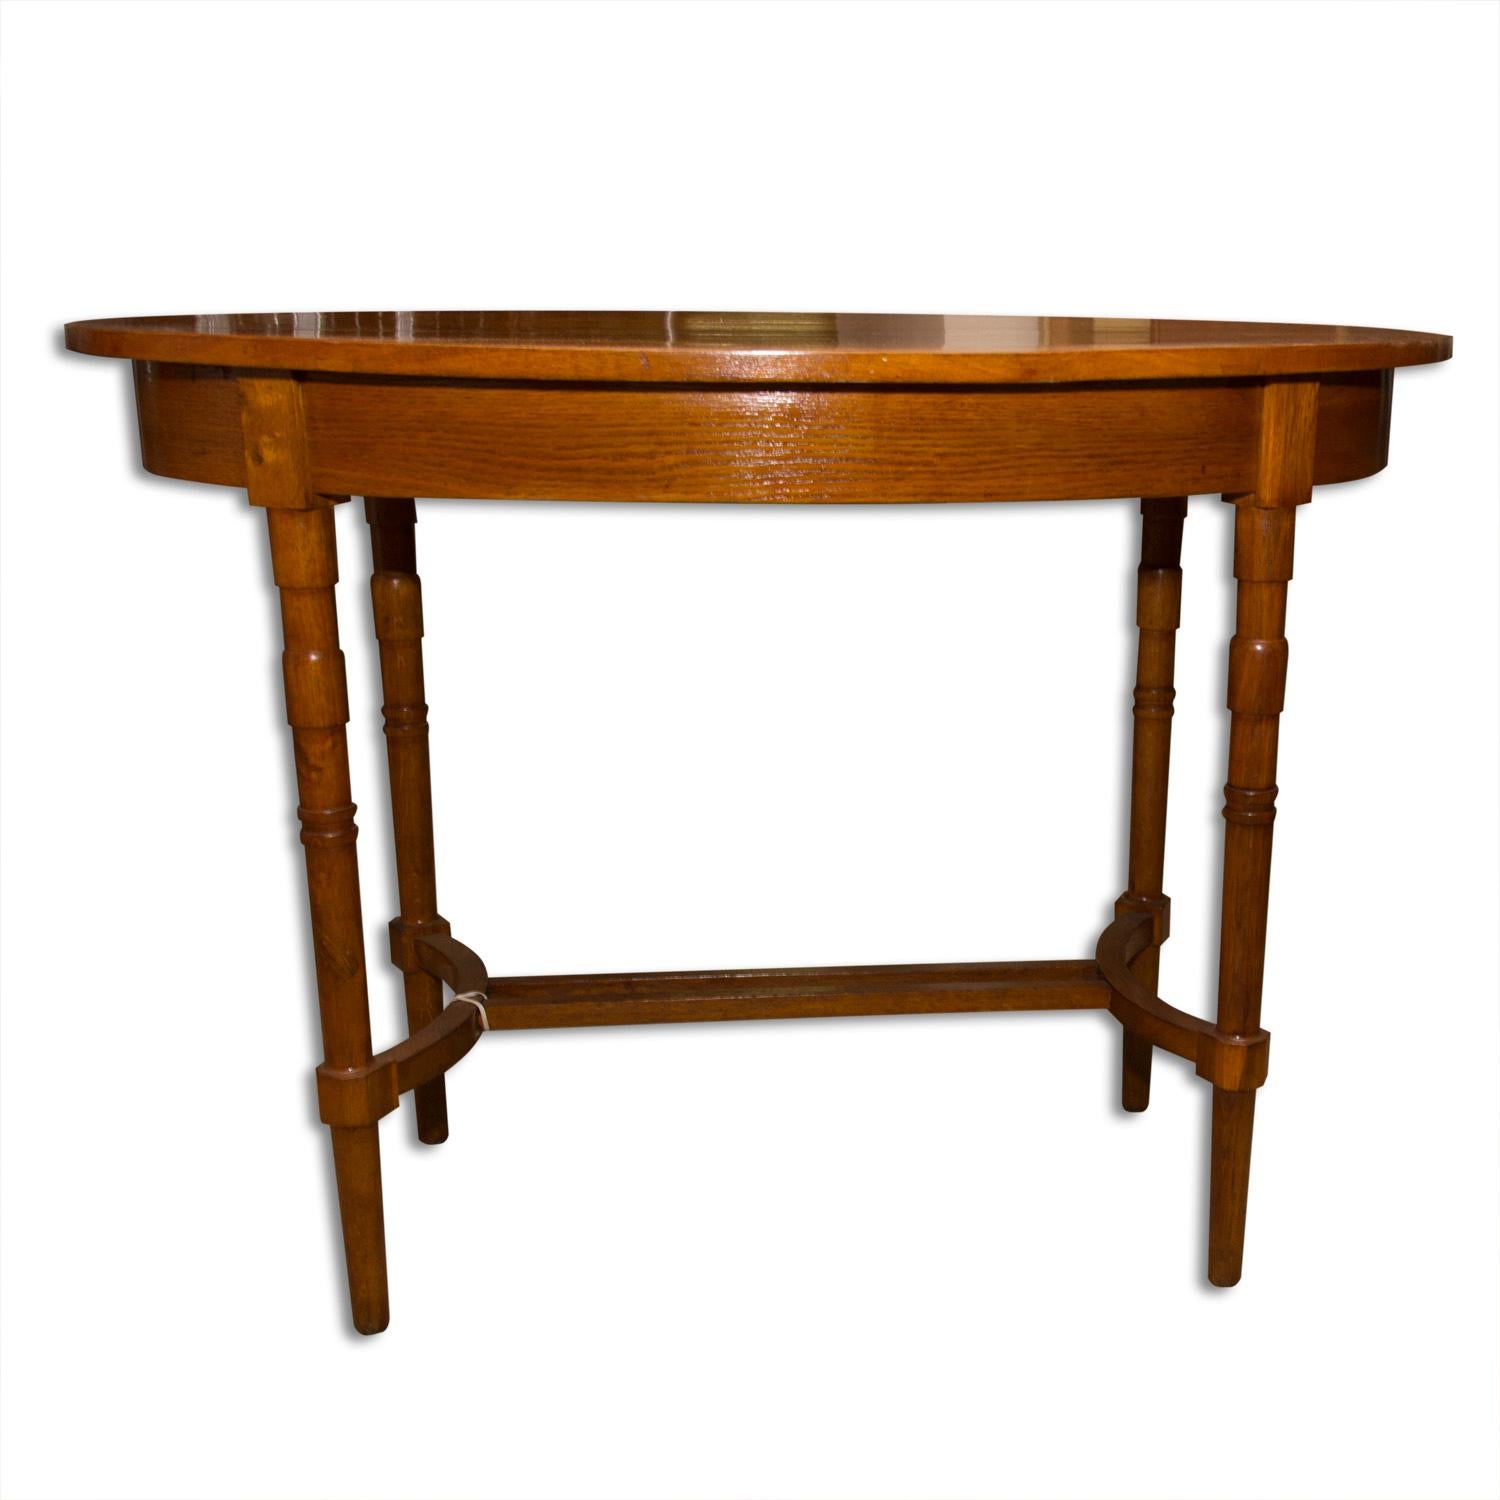 Dieser ovale Beistelltisch wurde um 1915 in Österreich-Ungarn entworfen und hergestellt. Er war aus Eichenholz gefertigt. Der Tisch ist komplett überarbeitet und hochglanzlackiert.